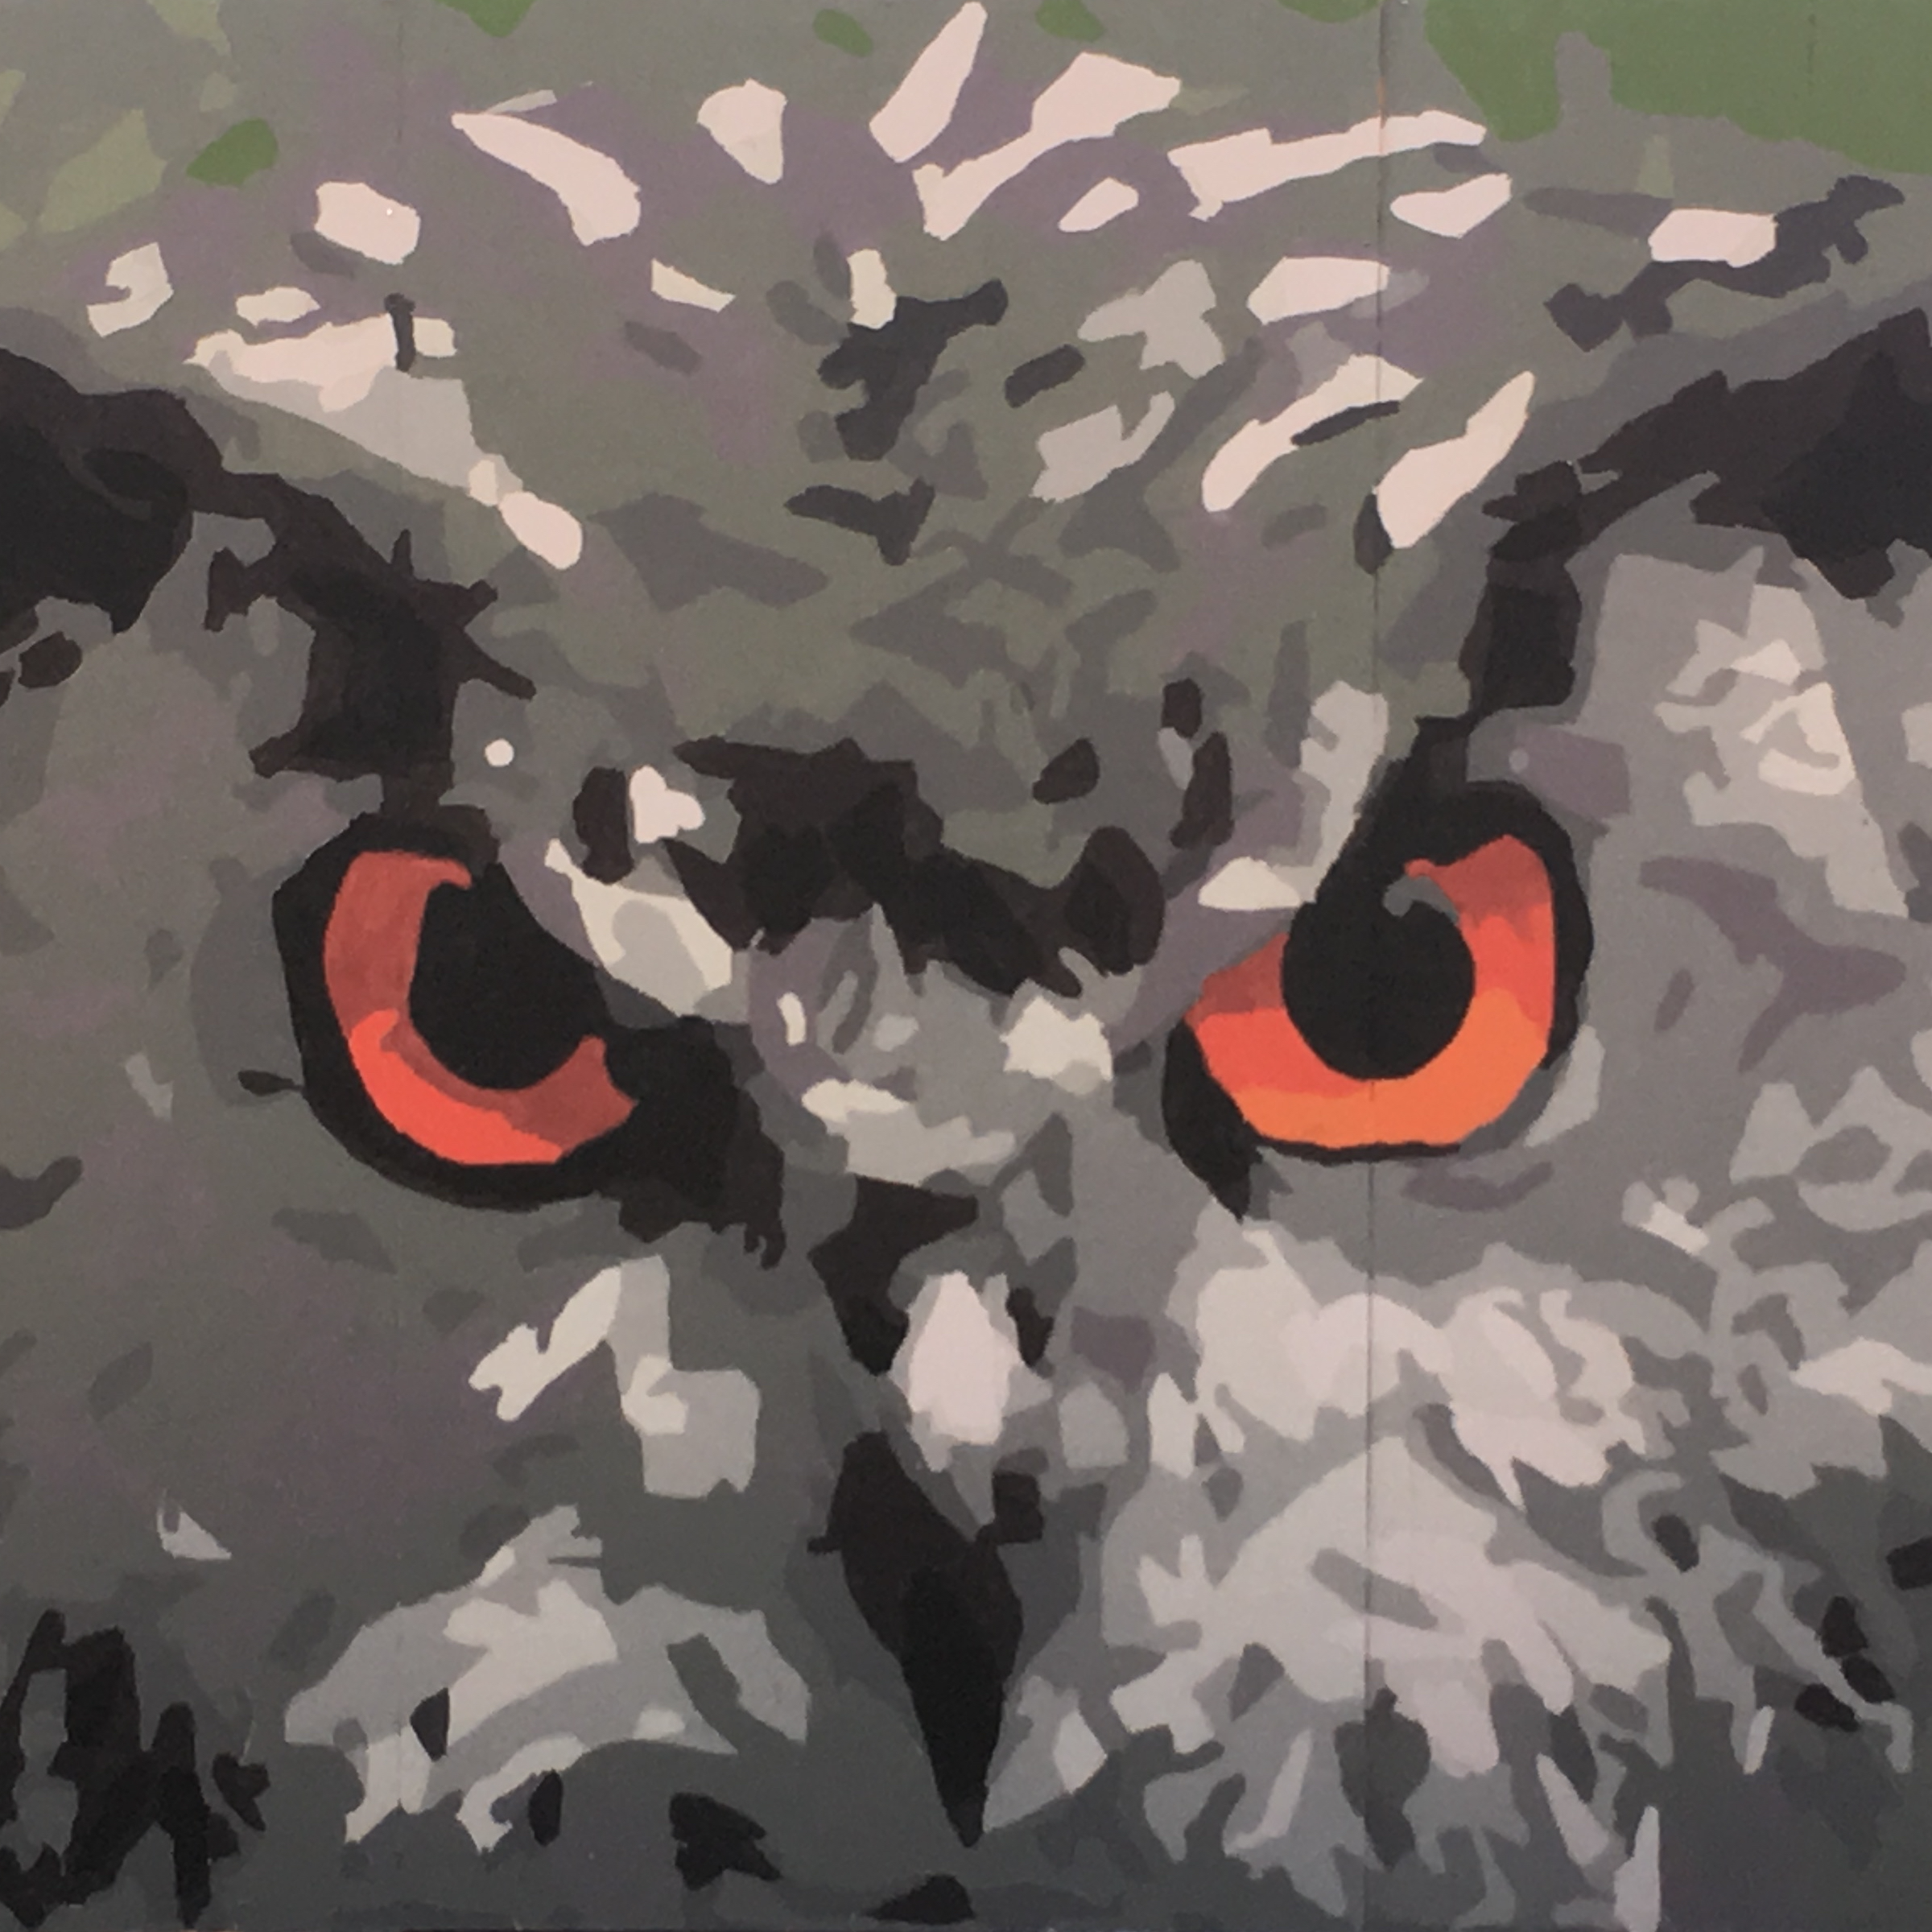 Stylized owl image